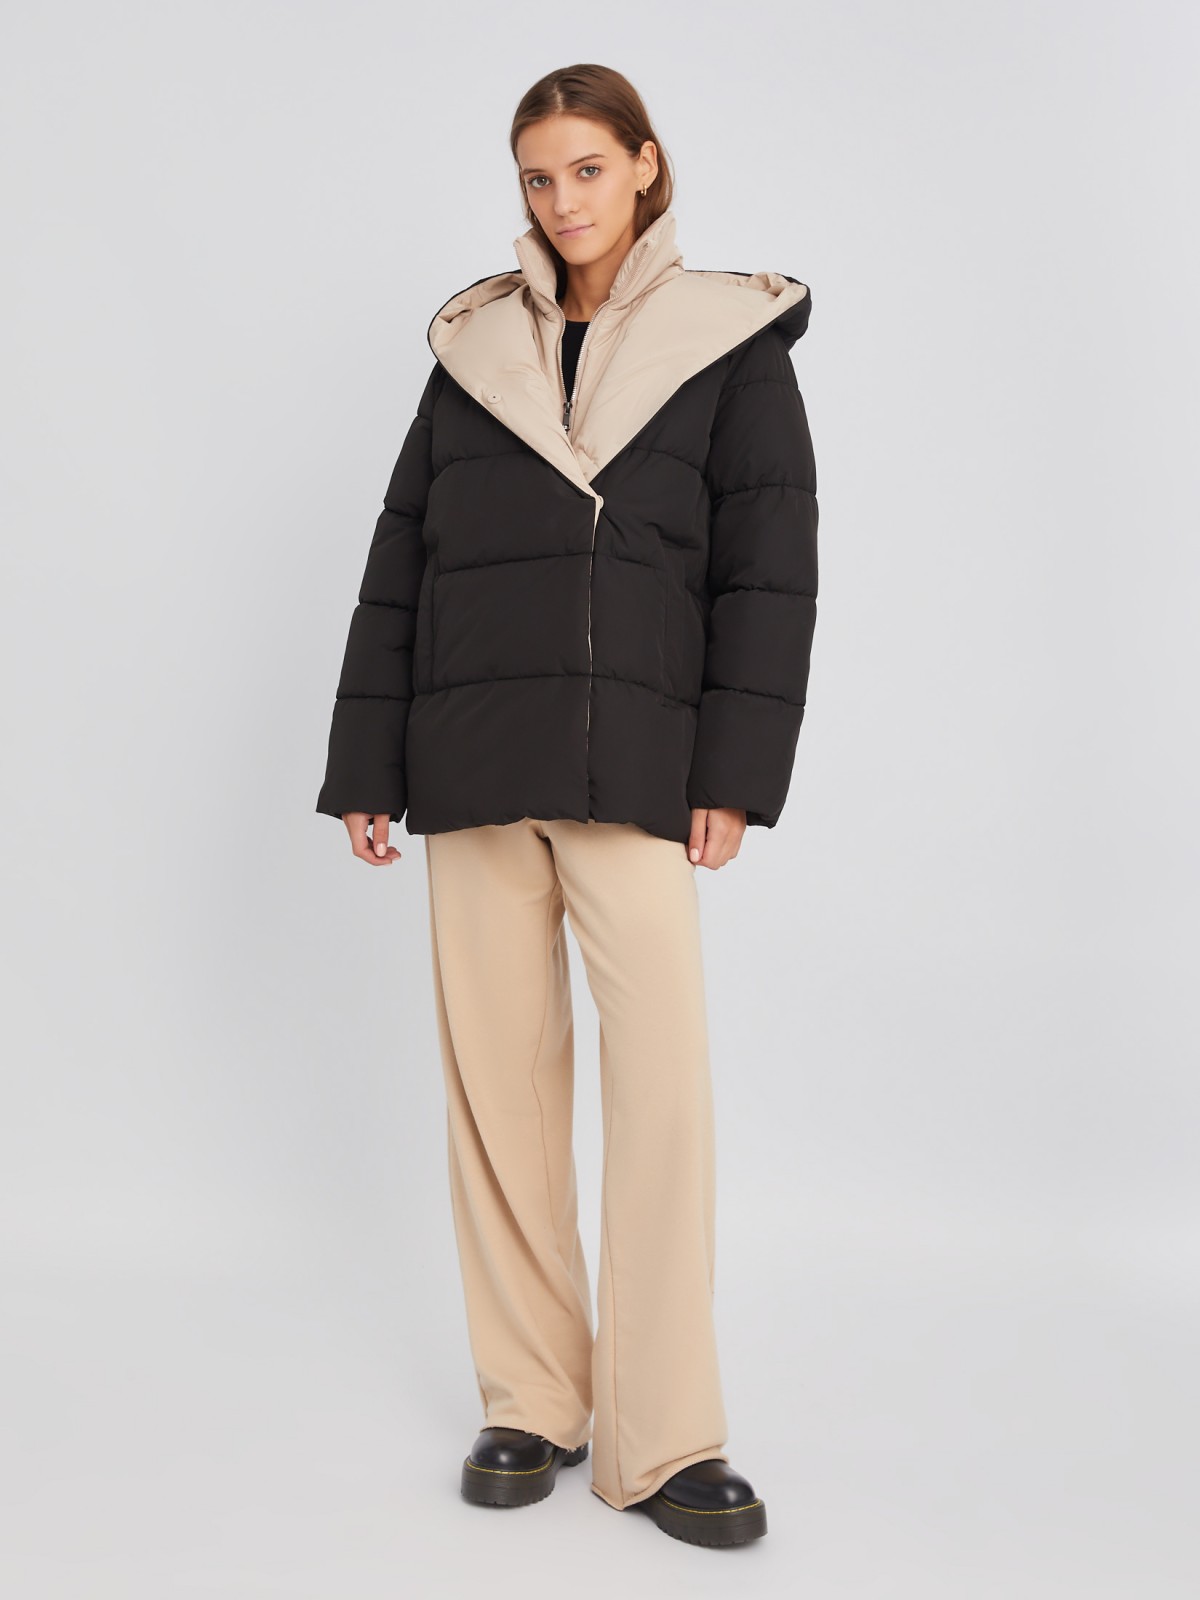 Тёплая стёганая дутая куртка с капюшоном и вшитой манишкой на молнии zolla 02334510L034, цвет черный, размер XS - фото 2